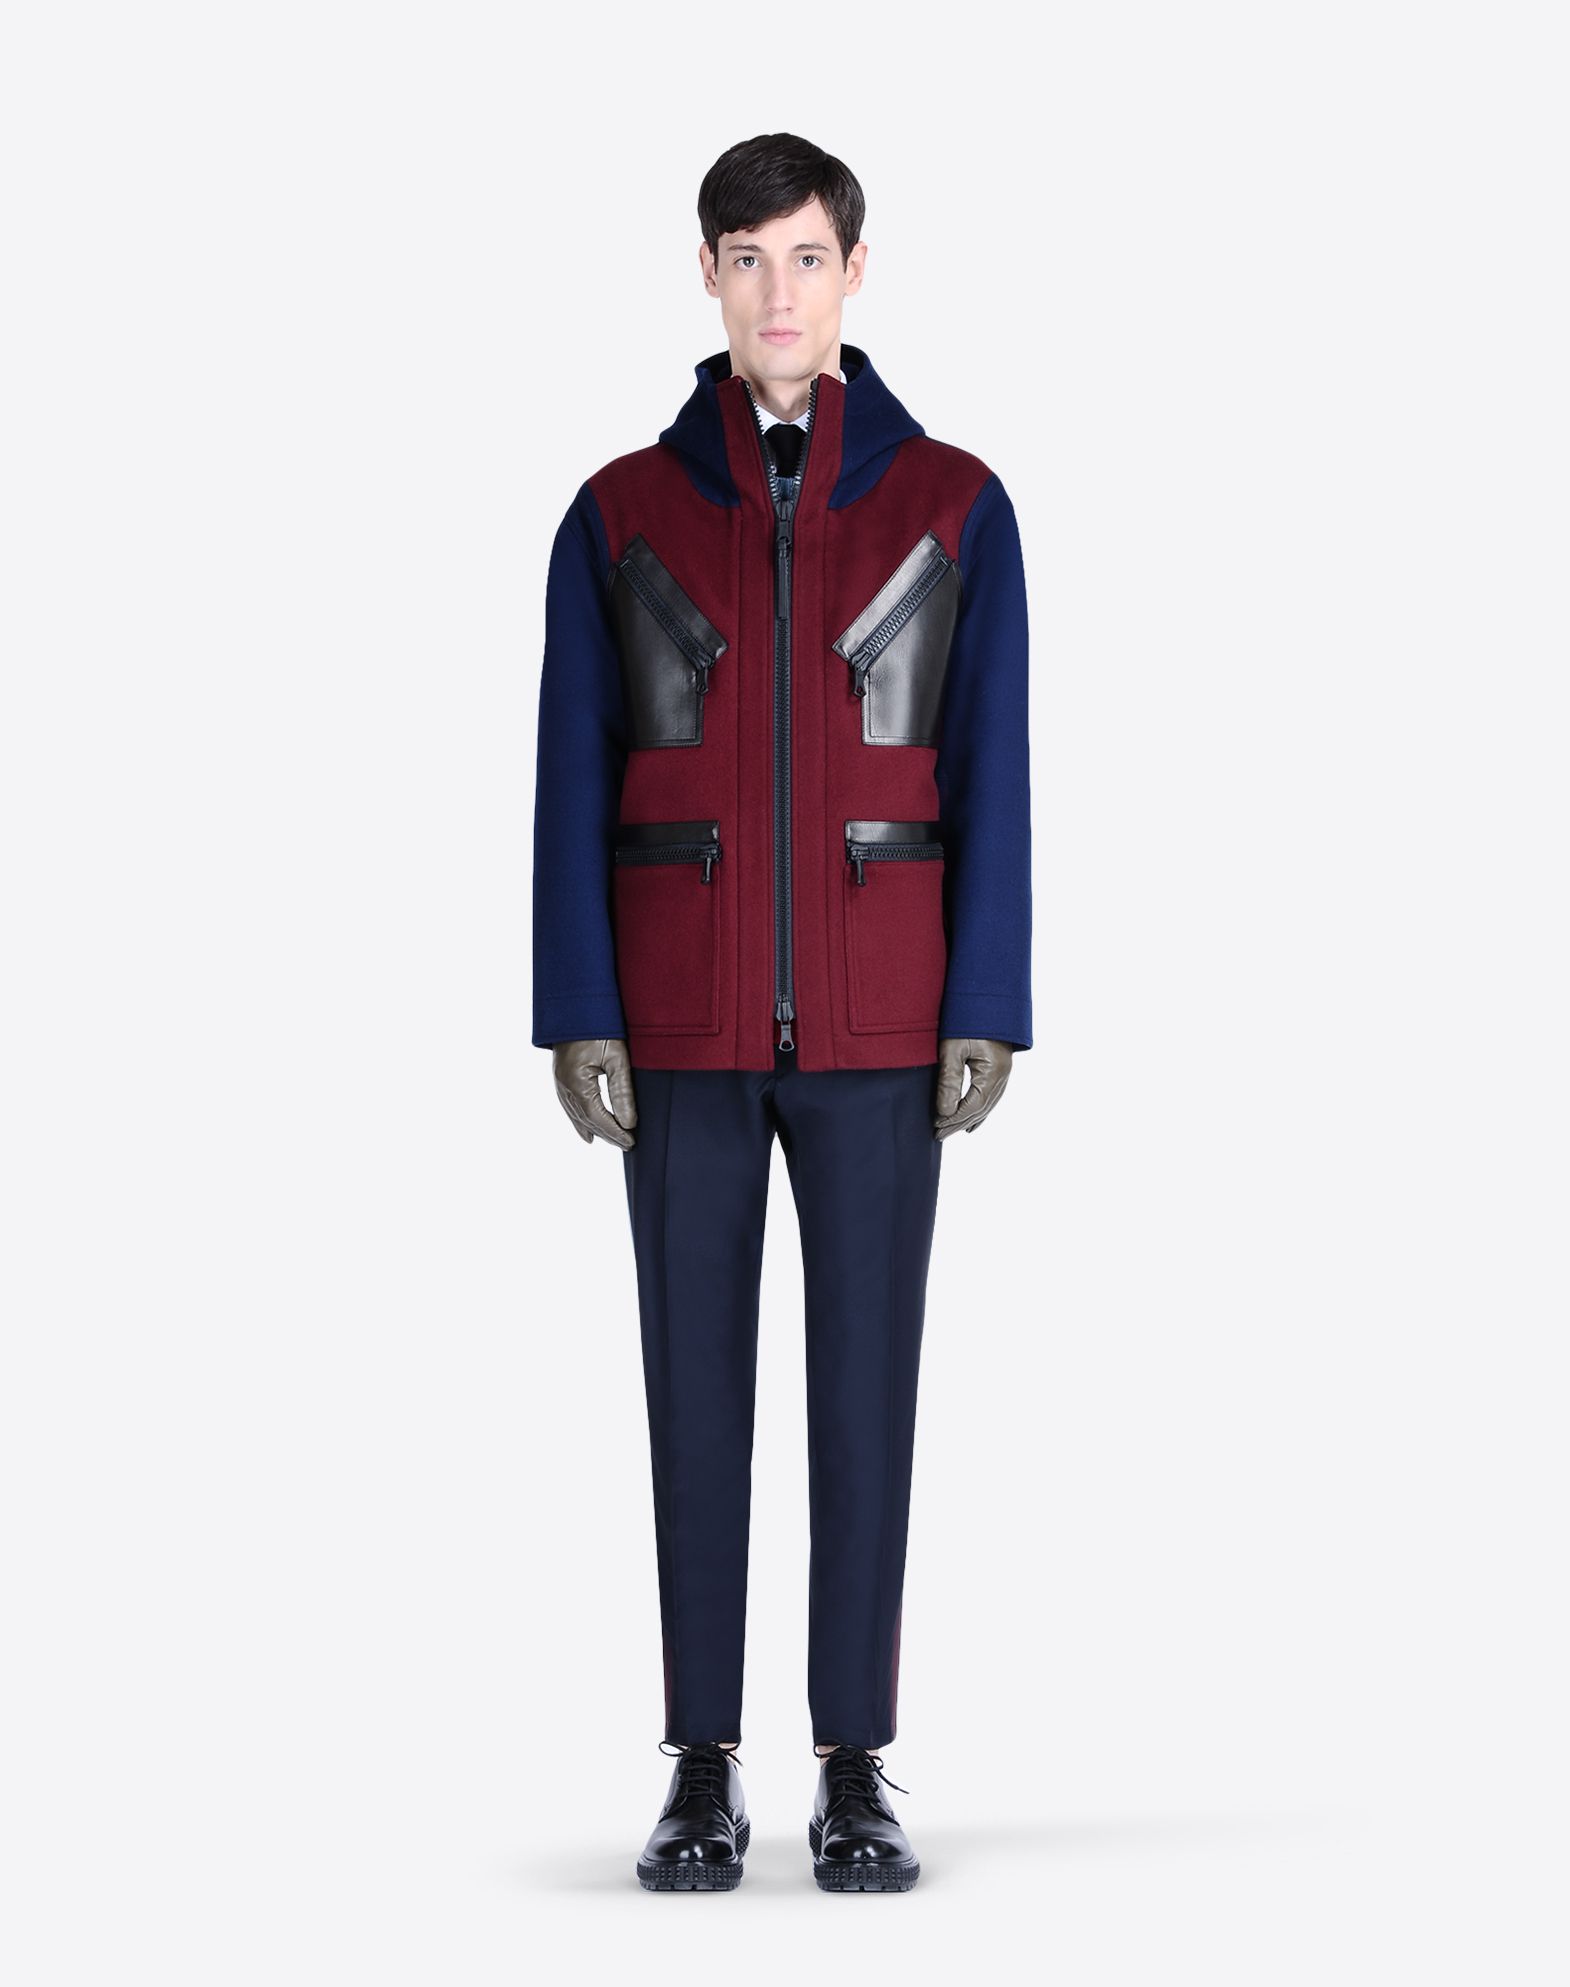 Valentino Color Block Fall/Winter 2015 Menswear Collection